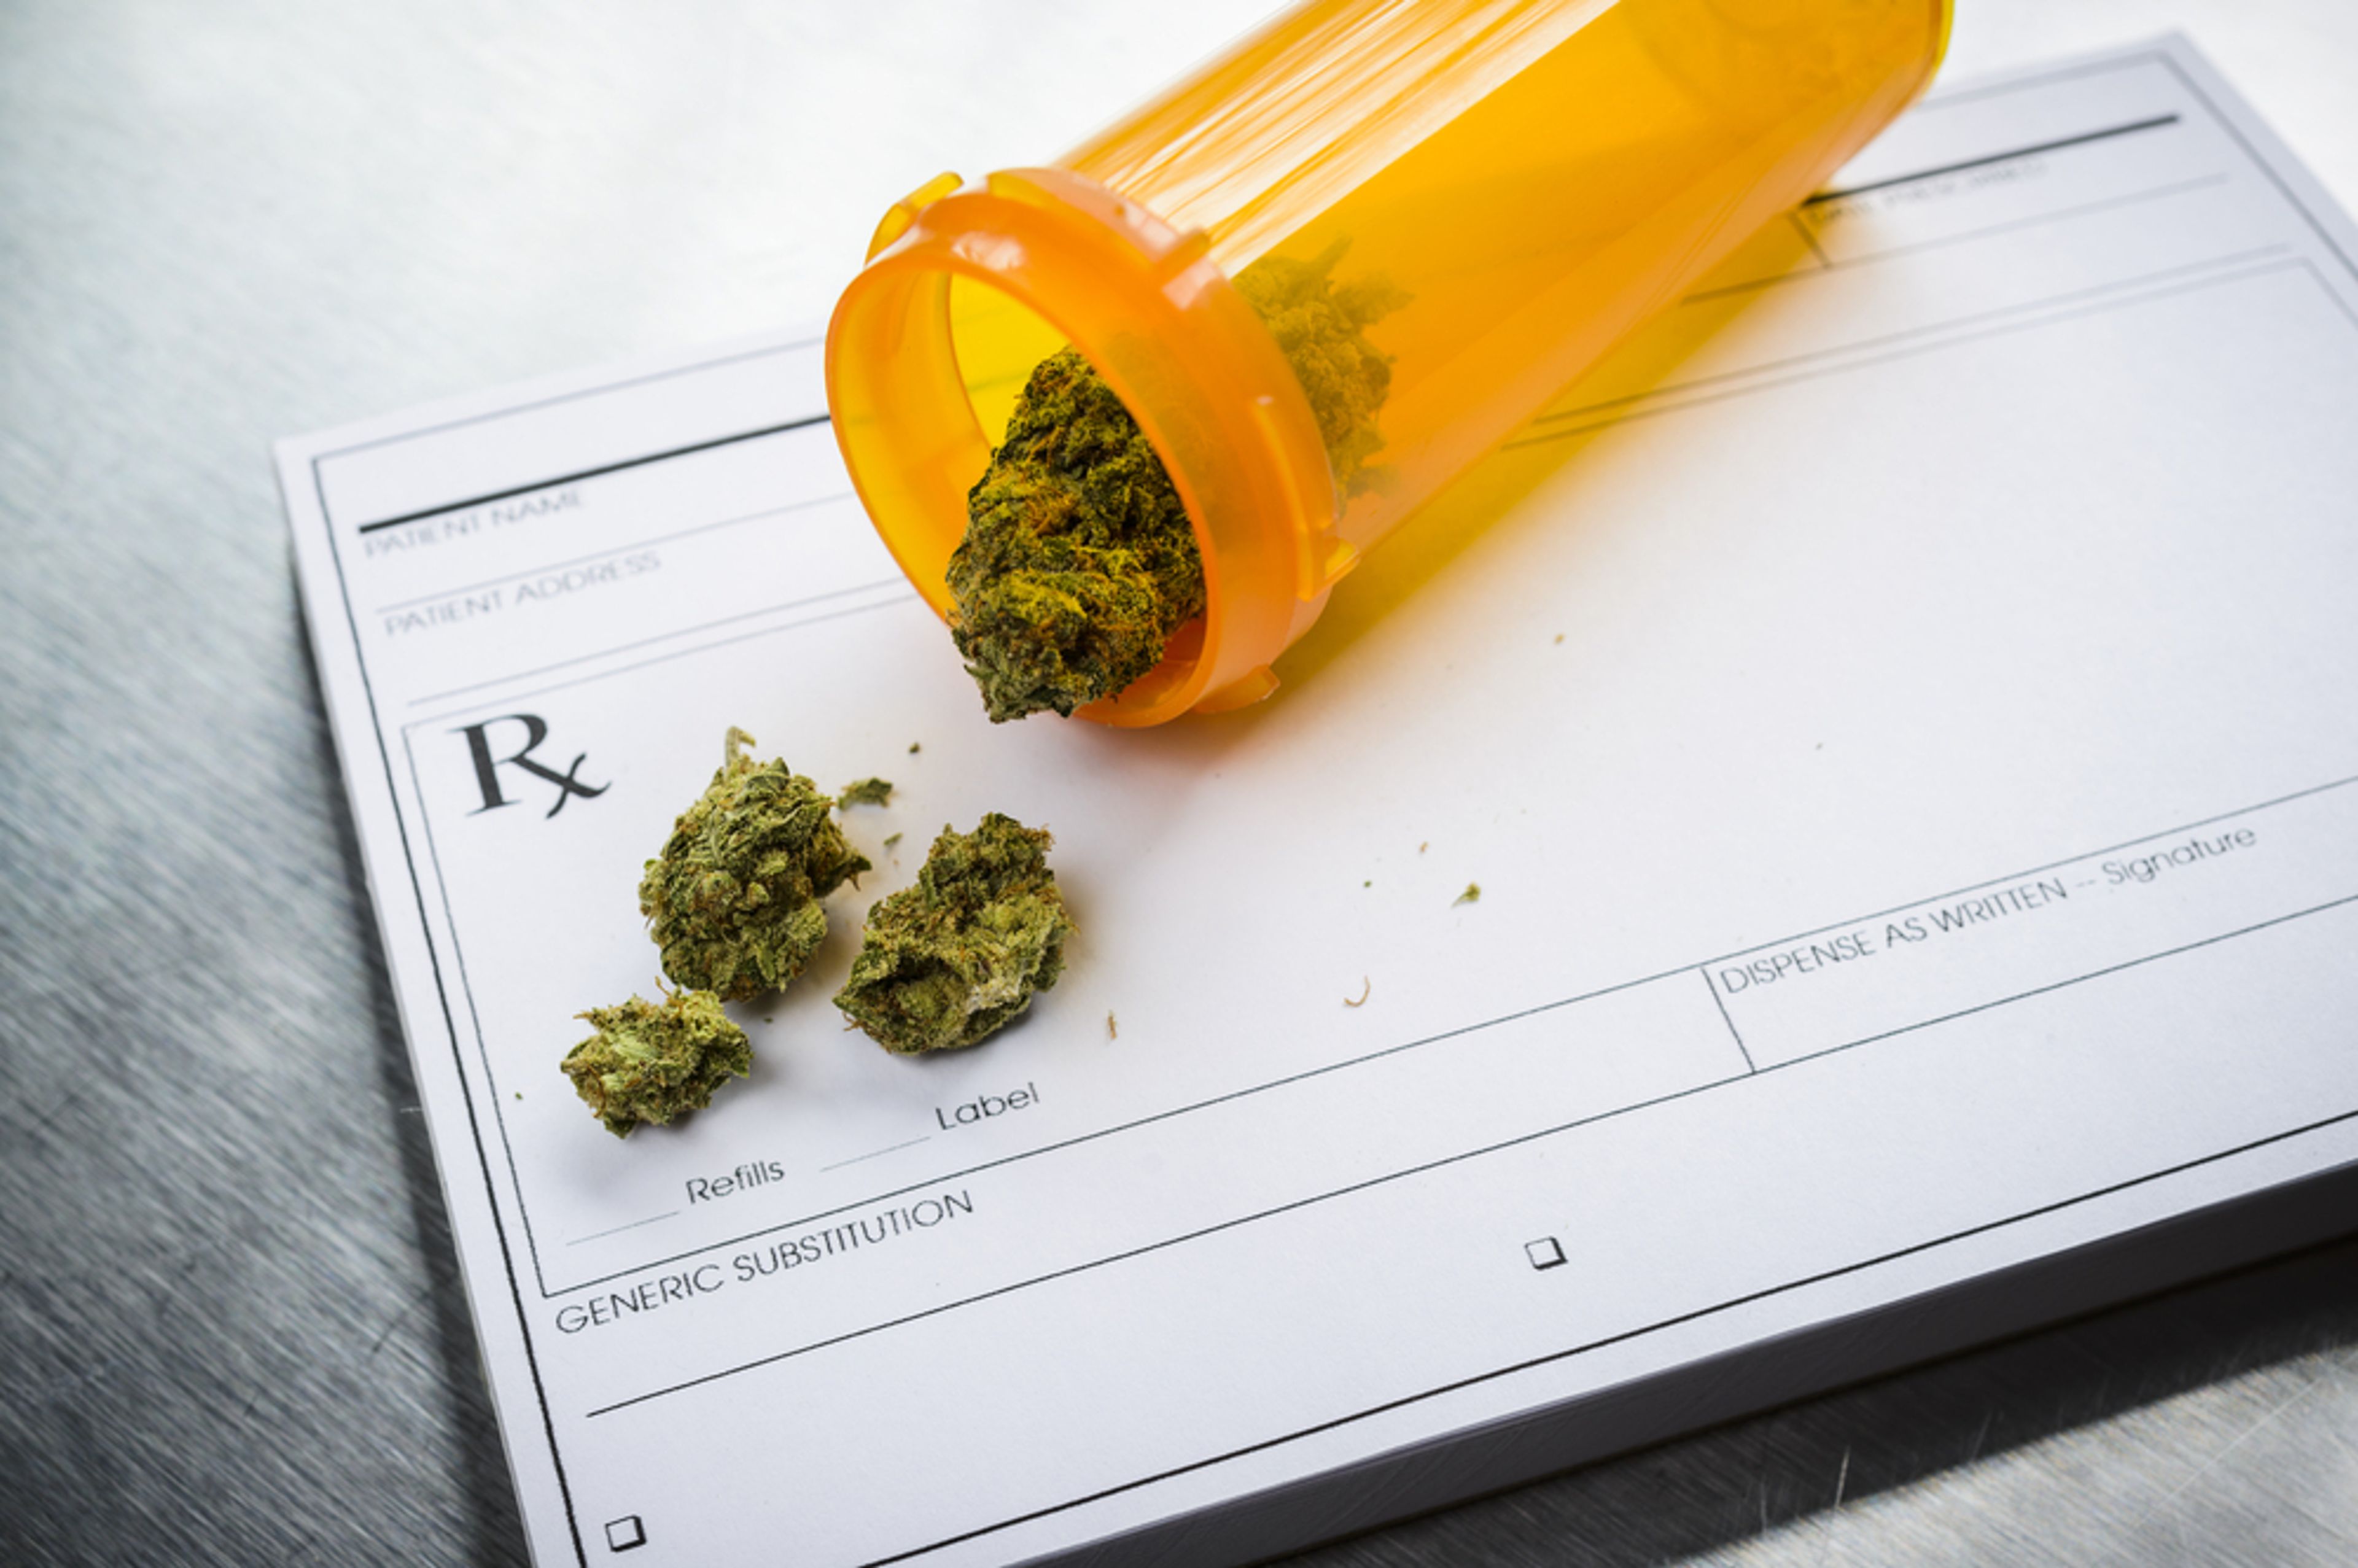 A photo of some prescription marijuana